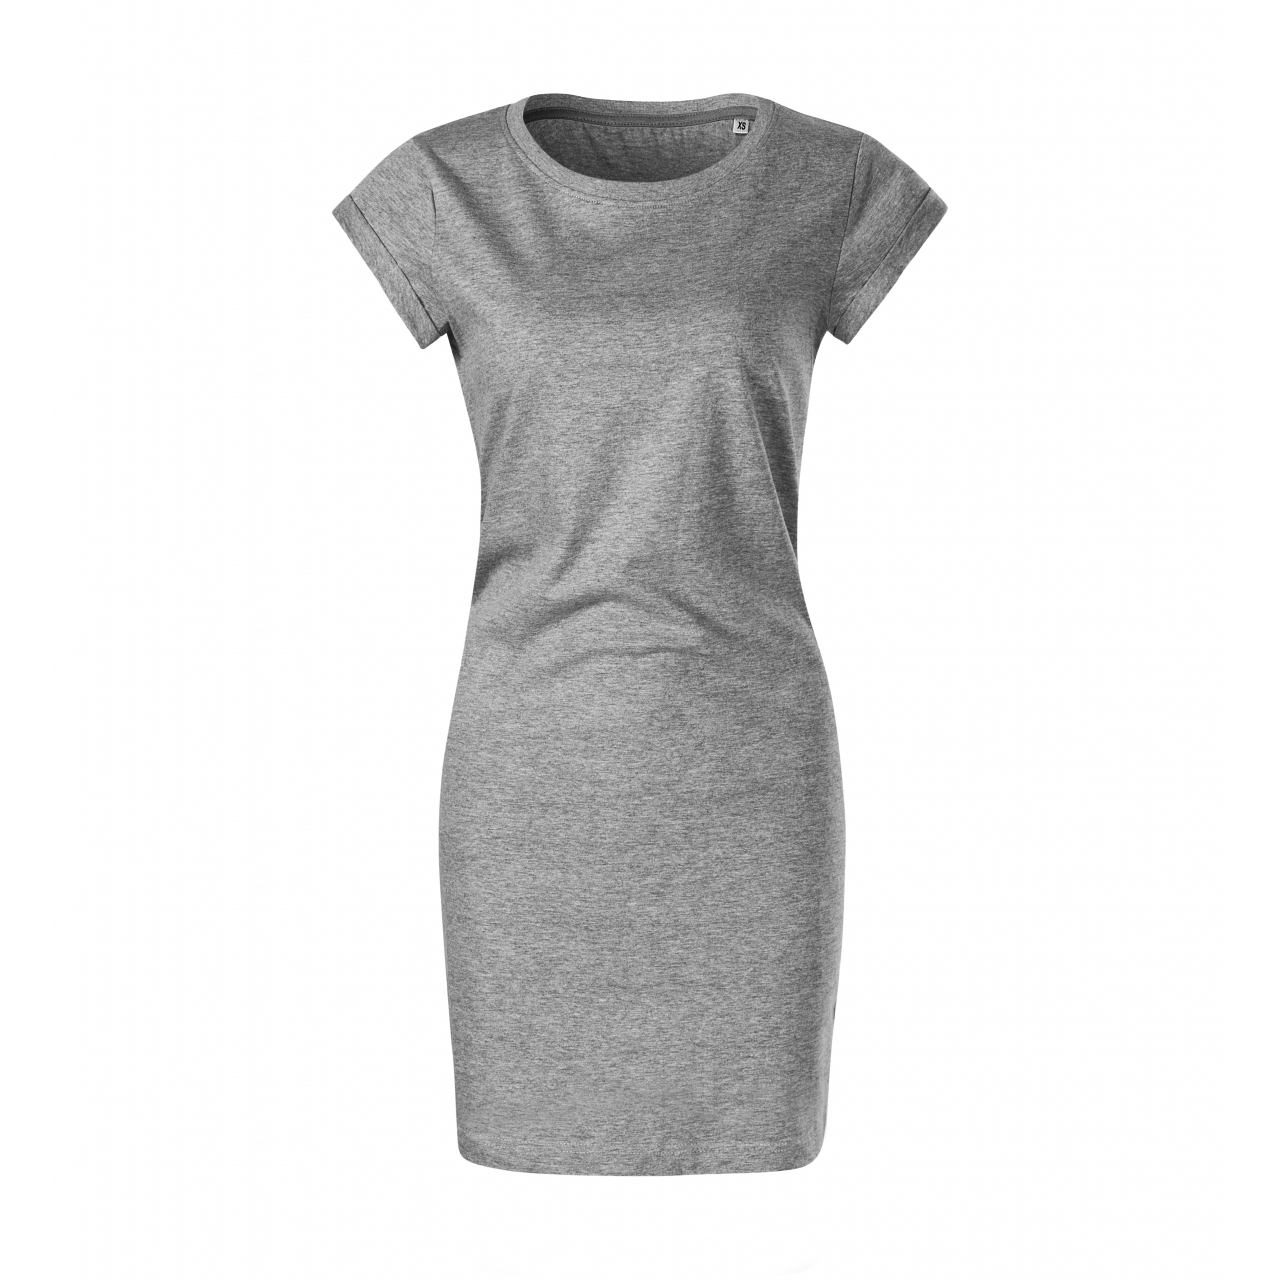 Šaty dámské Malfini Freedom - šedé, XS